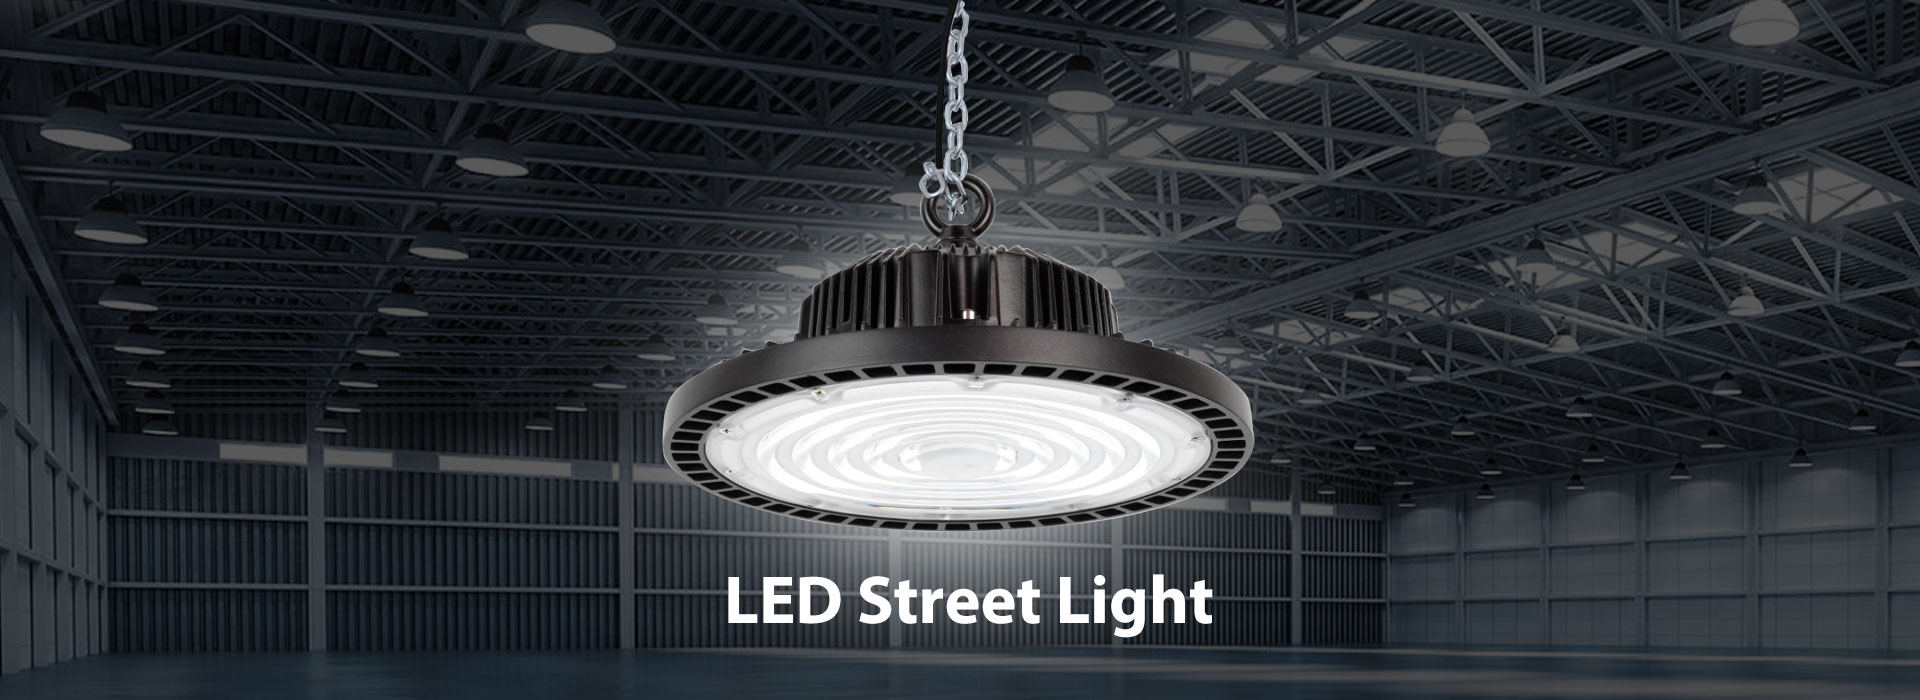 Kina LED-gatelysfabrikk